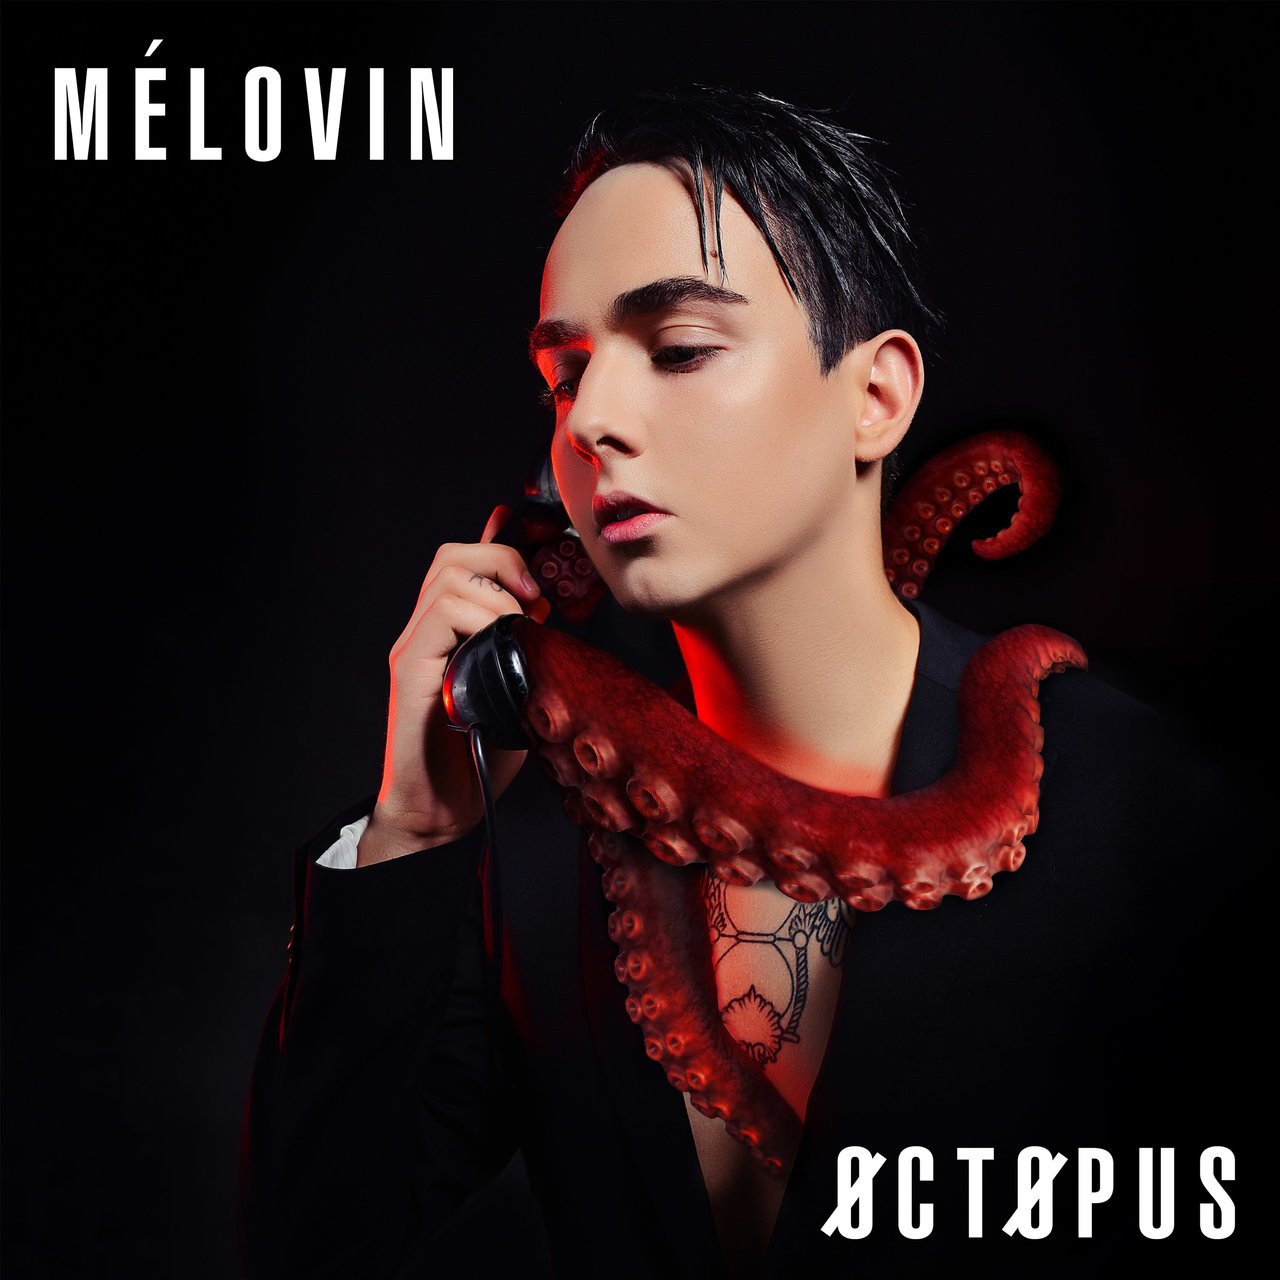 MÉLOVIN OCTOPUS cover artwork